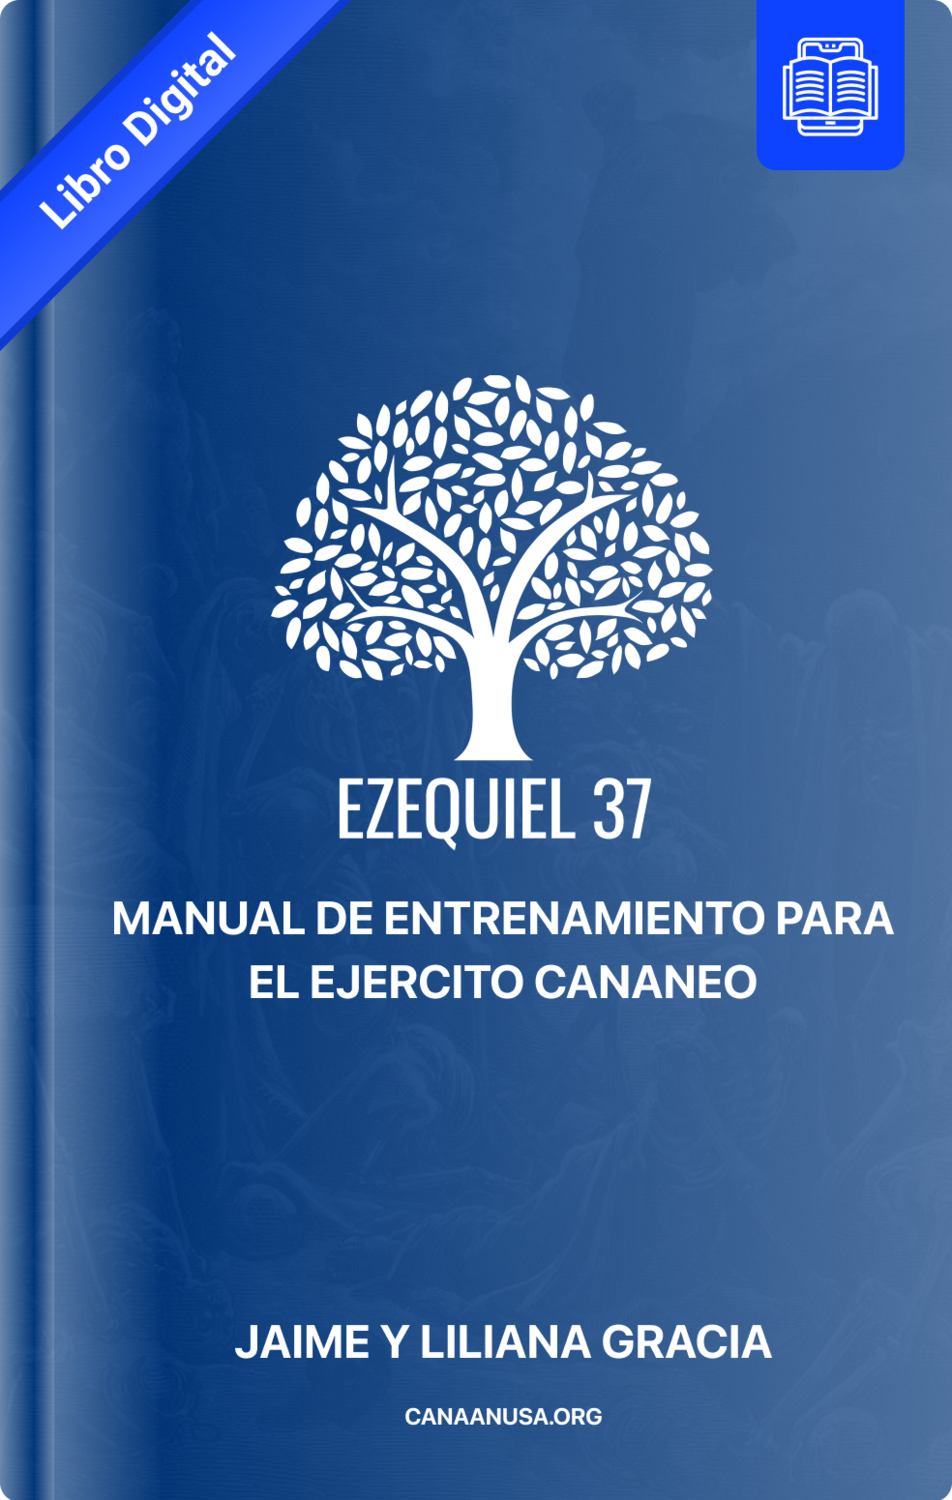 Ezequiel 37 - Digital